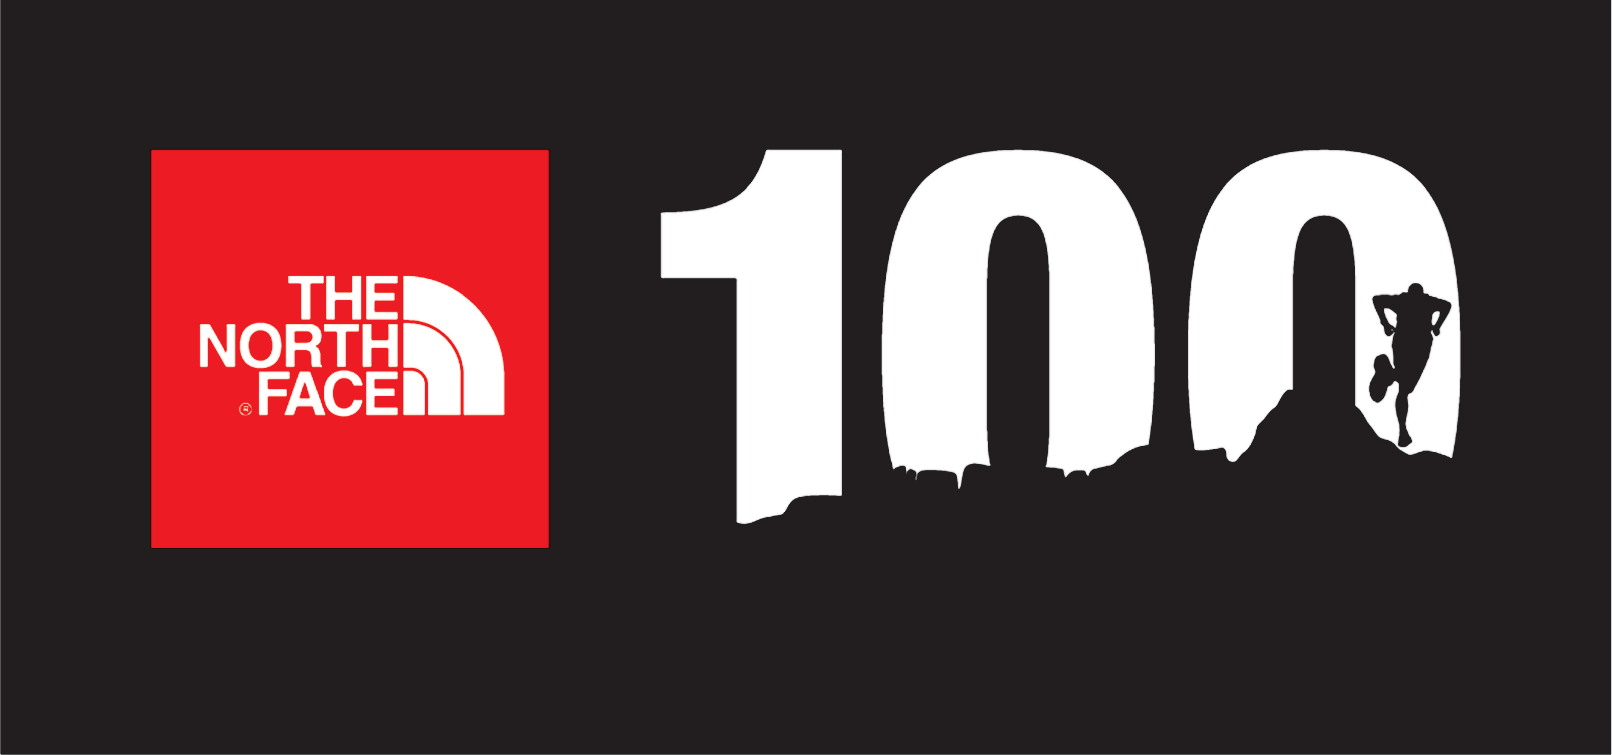 The 100s Logo - 100 Logos